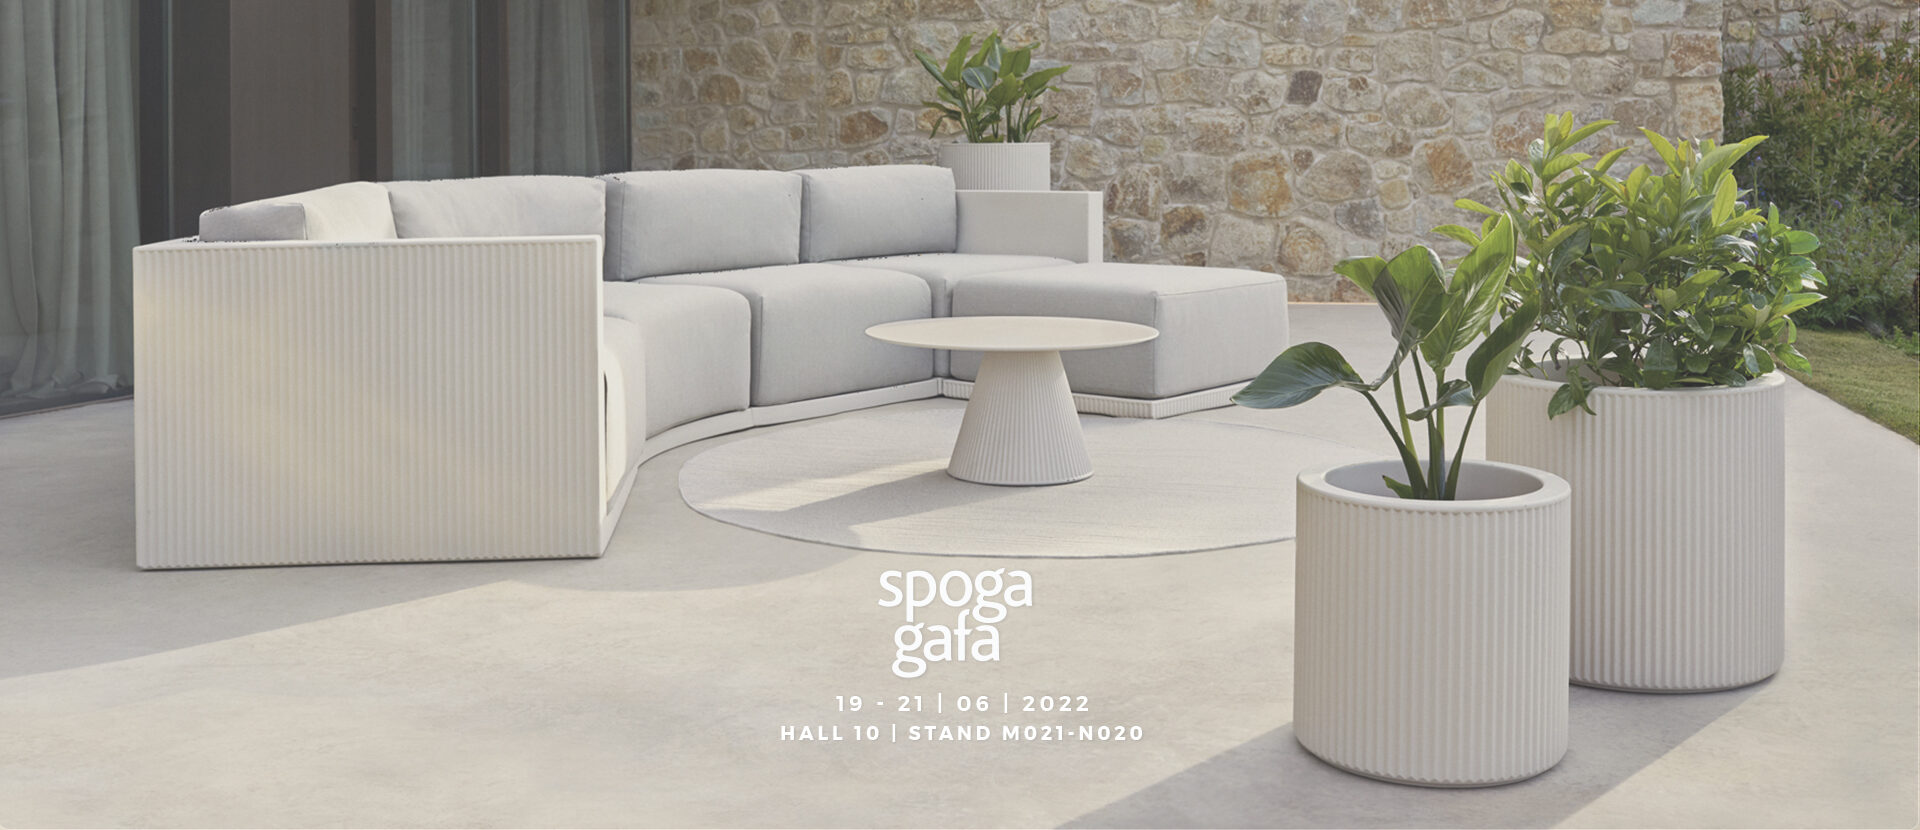 Vondom&#8217;s furniture for garden will be exhibited at Spoga Gafa 2022